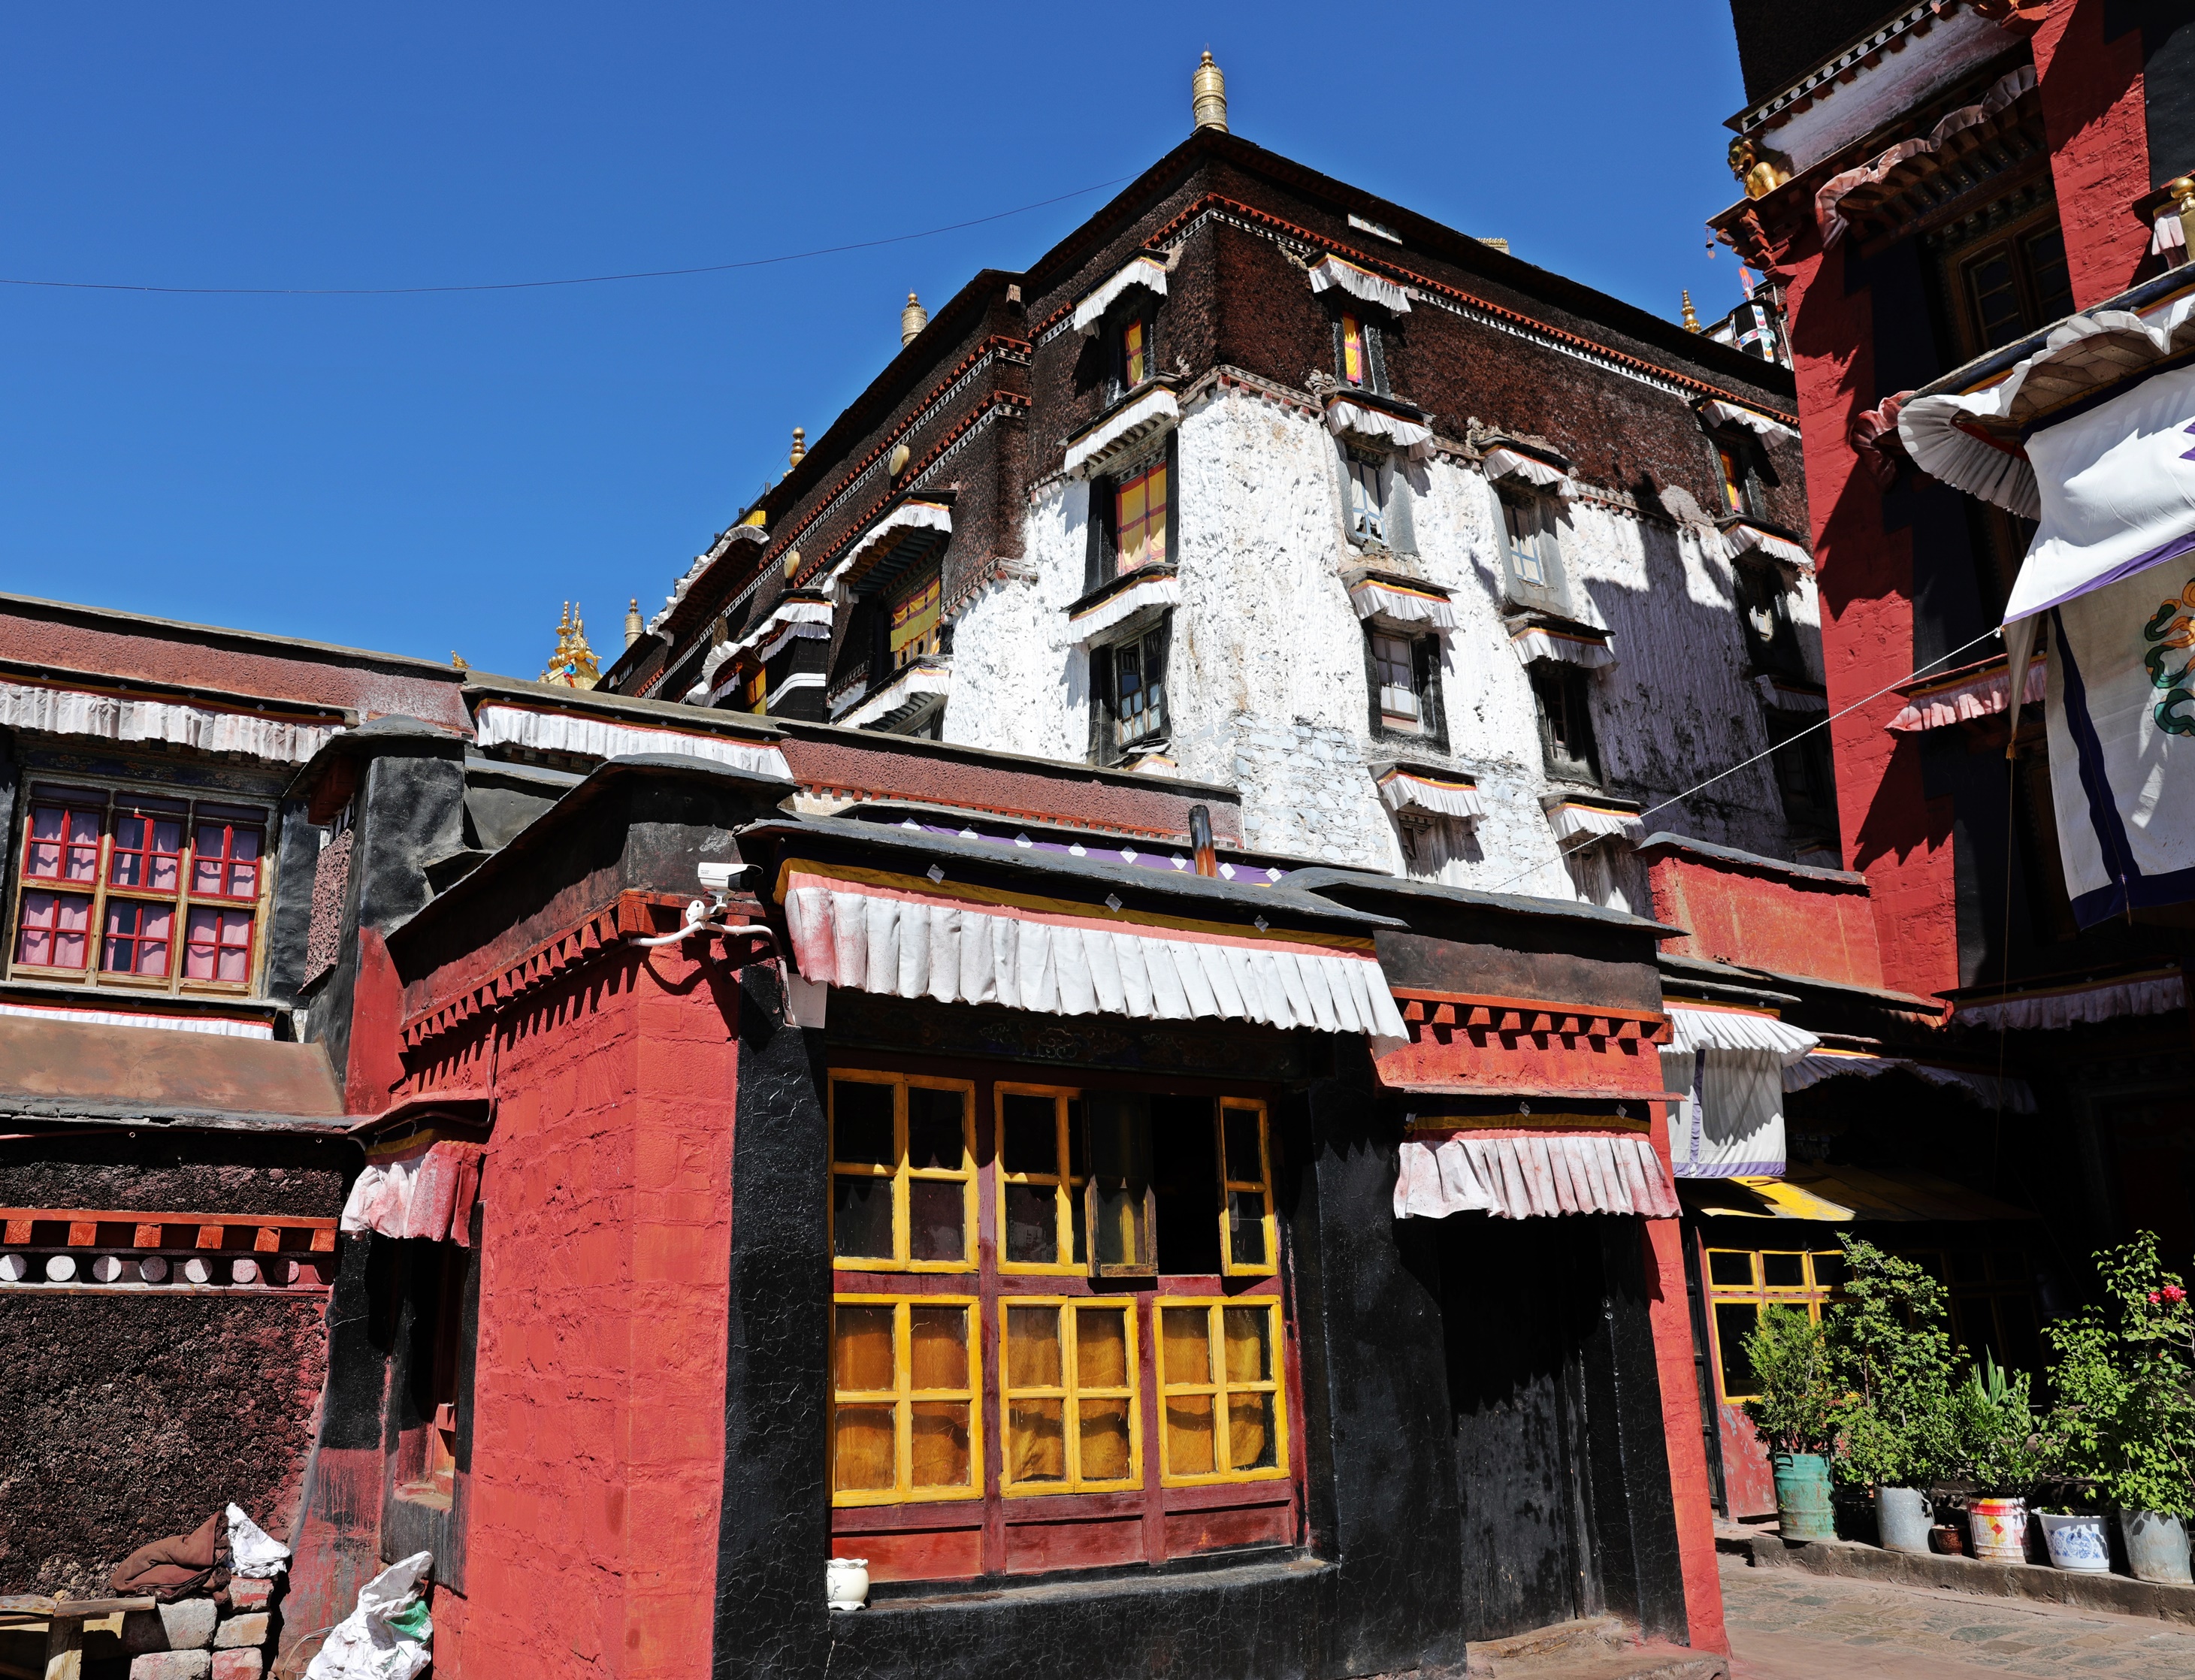 Tashi Lhunpo Gompa (Monastery), Tibet